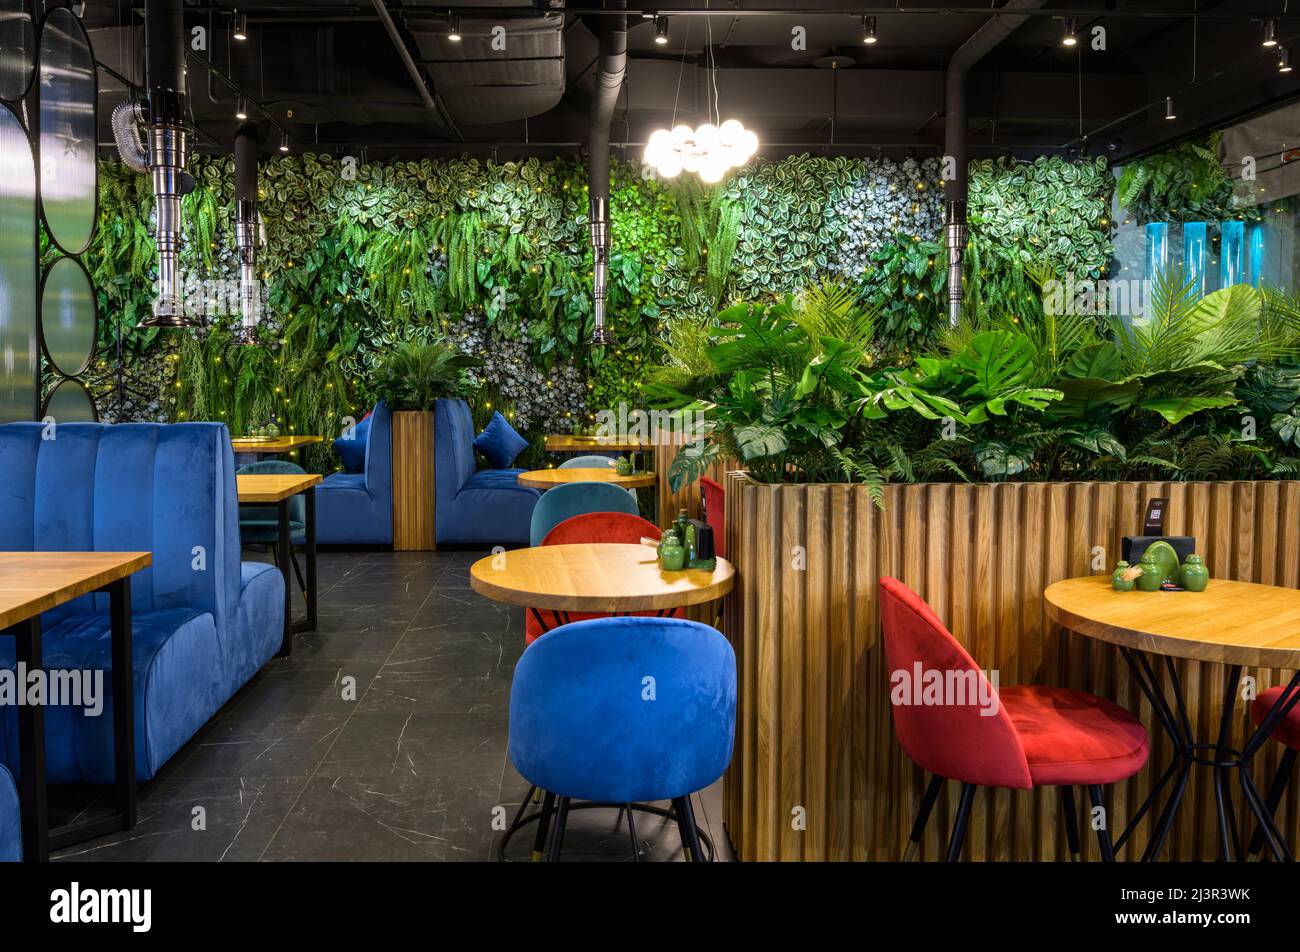 Moskau - 17. Dez 2021: Vertikaler Garten im Restaurantinnenraum, Landschaftsgestaltung im modernen Café, gemütliches Öko-Design im Innenbereich. Wand mit natürlichen grünen Pflanzen, Stockfoto